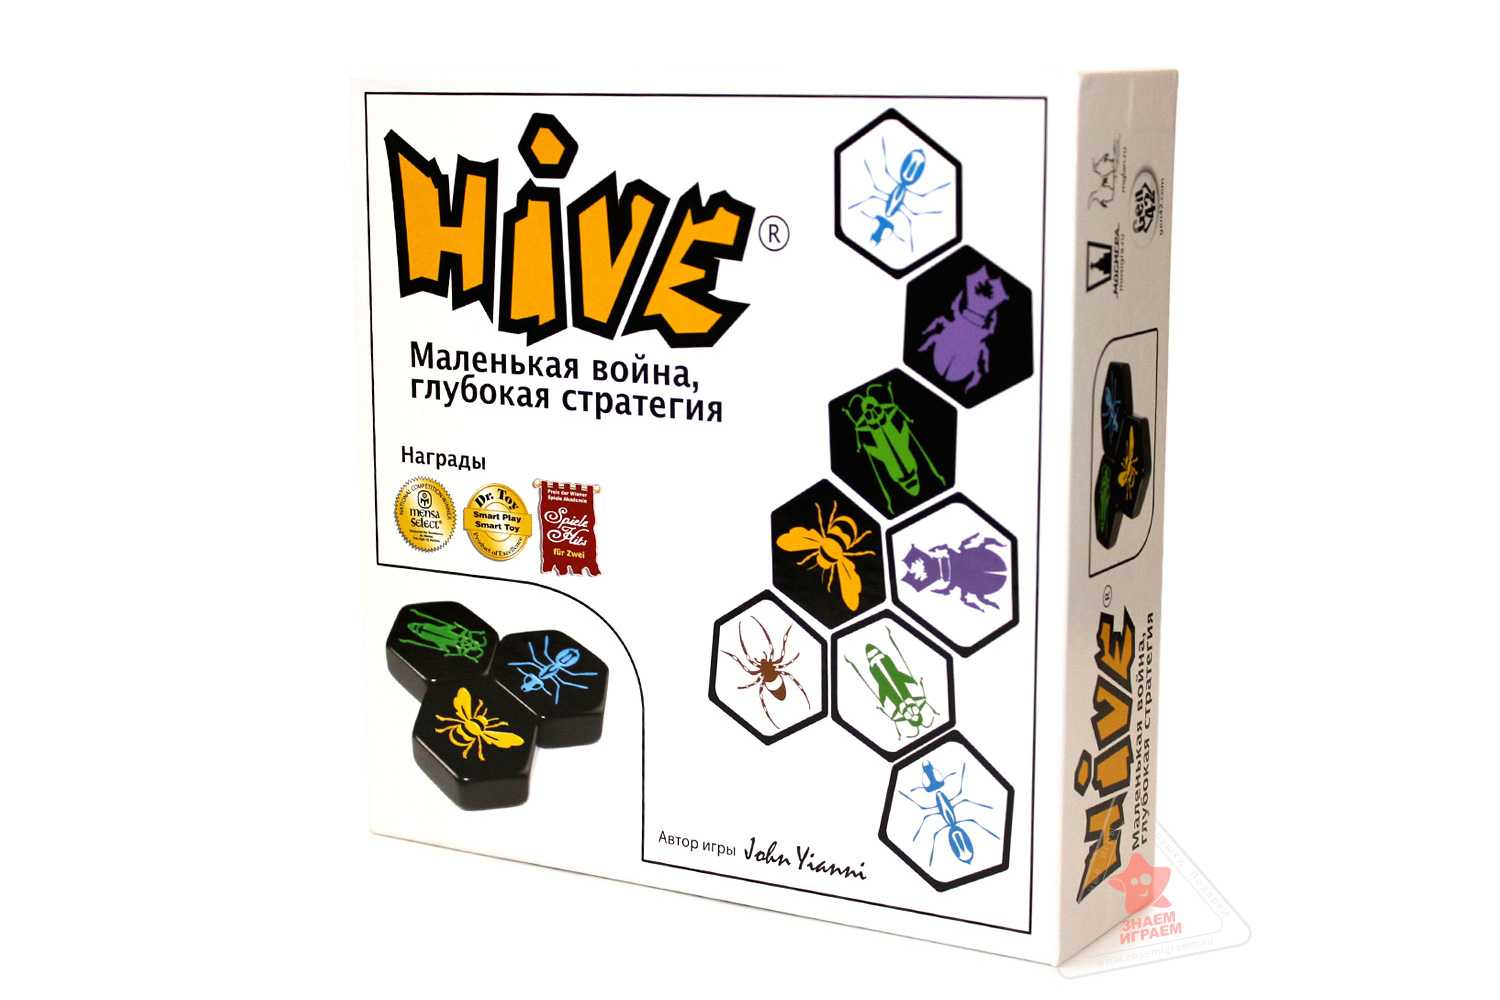 Улей (hive) - настольные игры